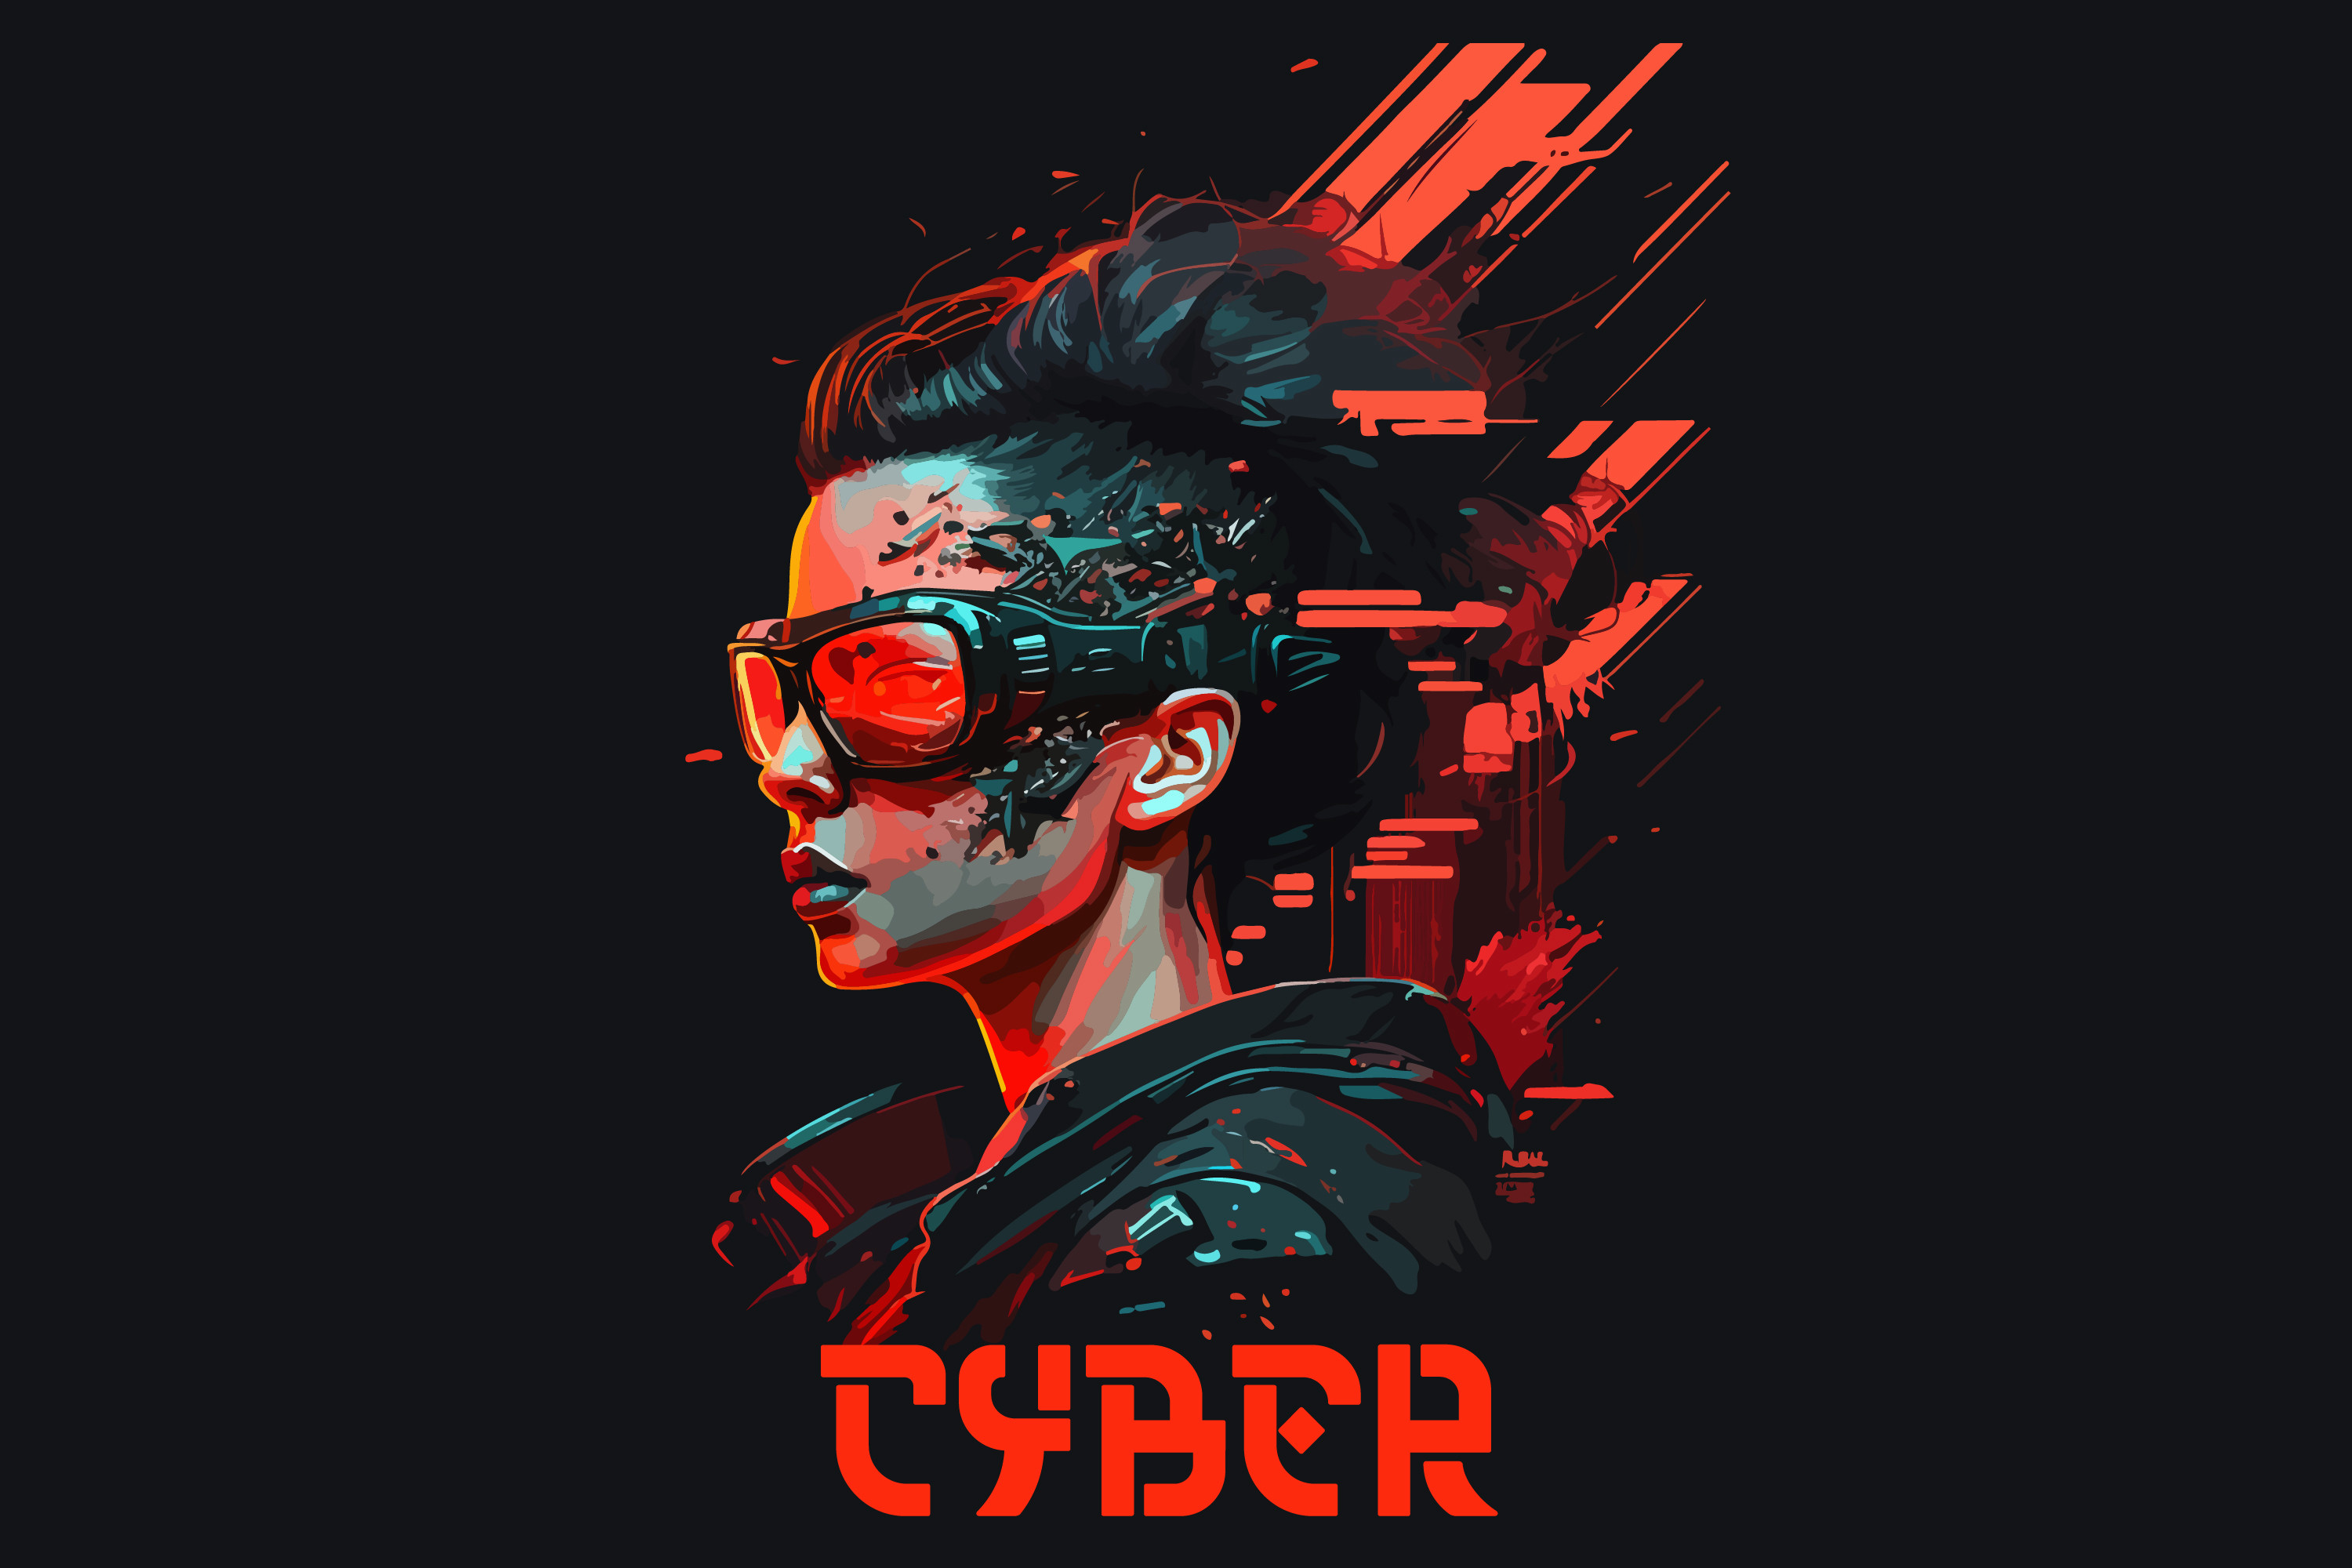 Cyberpunk 2077 iPhone Wallpapers -Top 25 Best Cyberpunk 2077